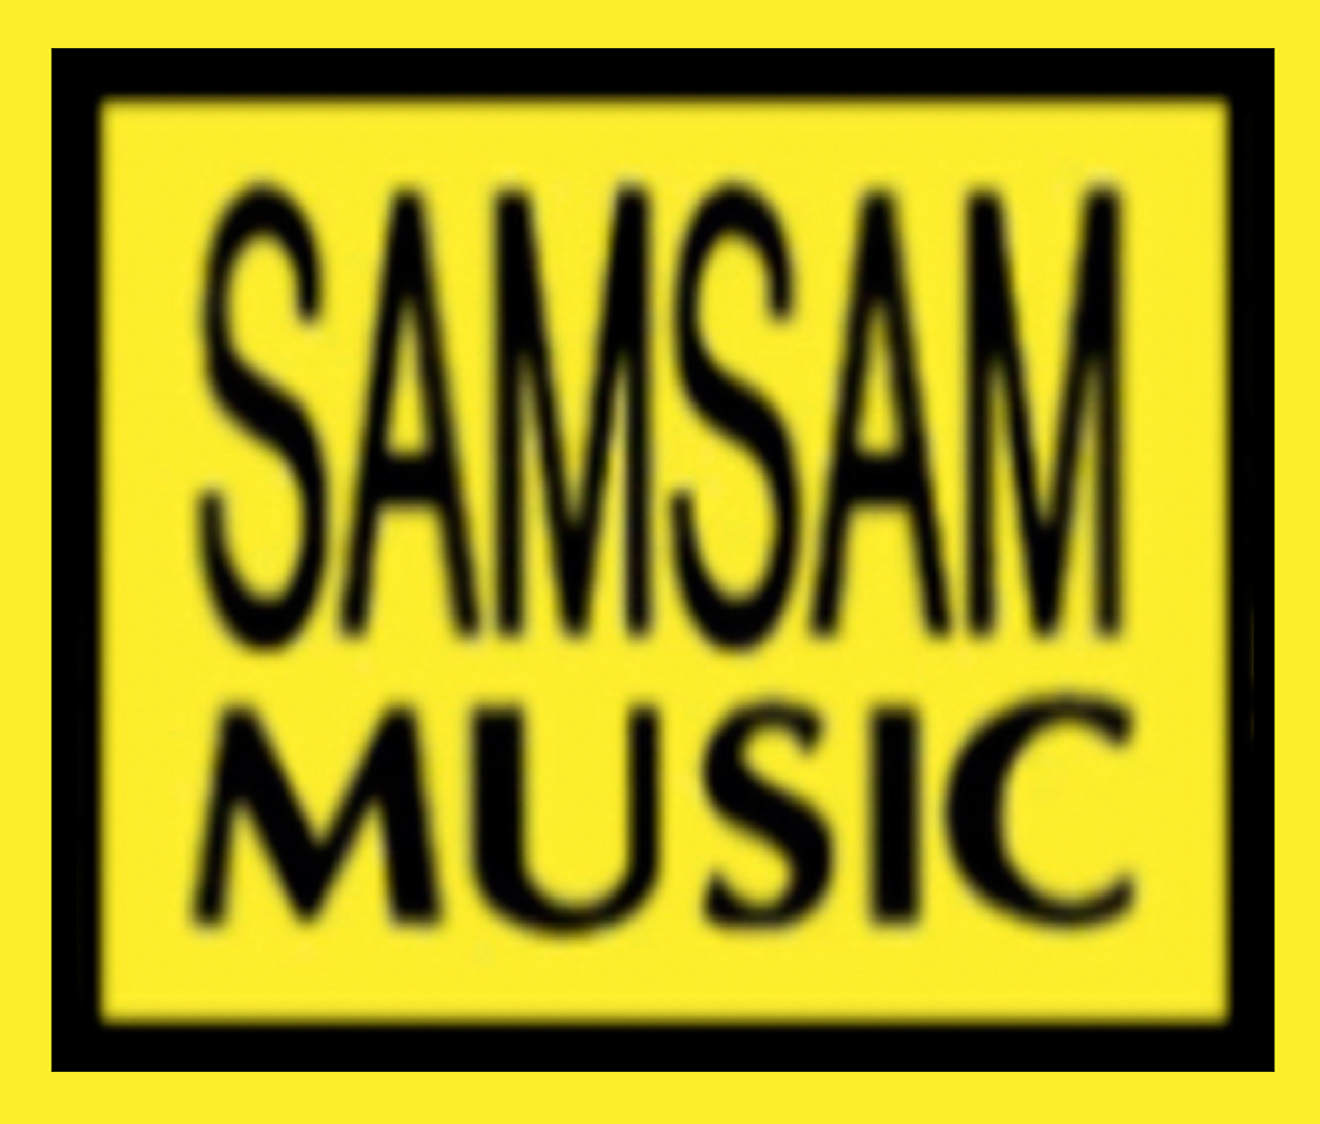 Sam Sam Music